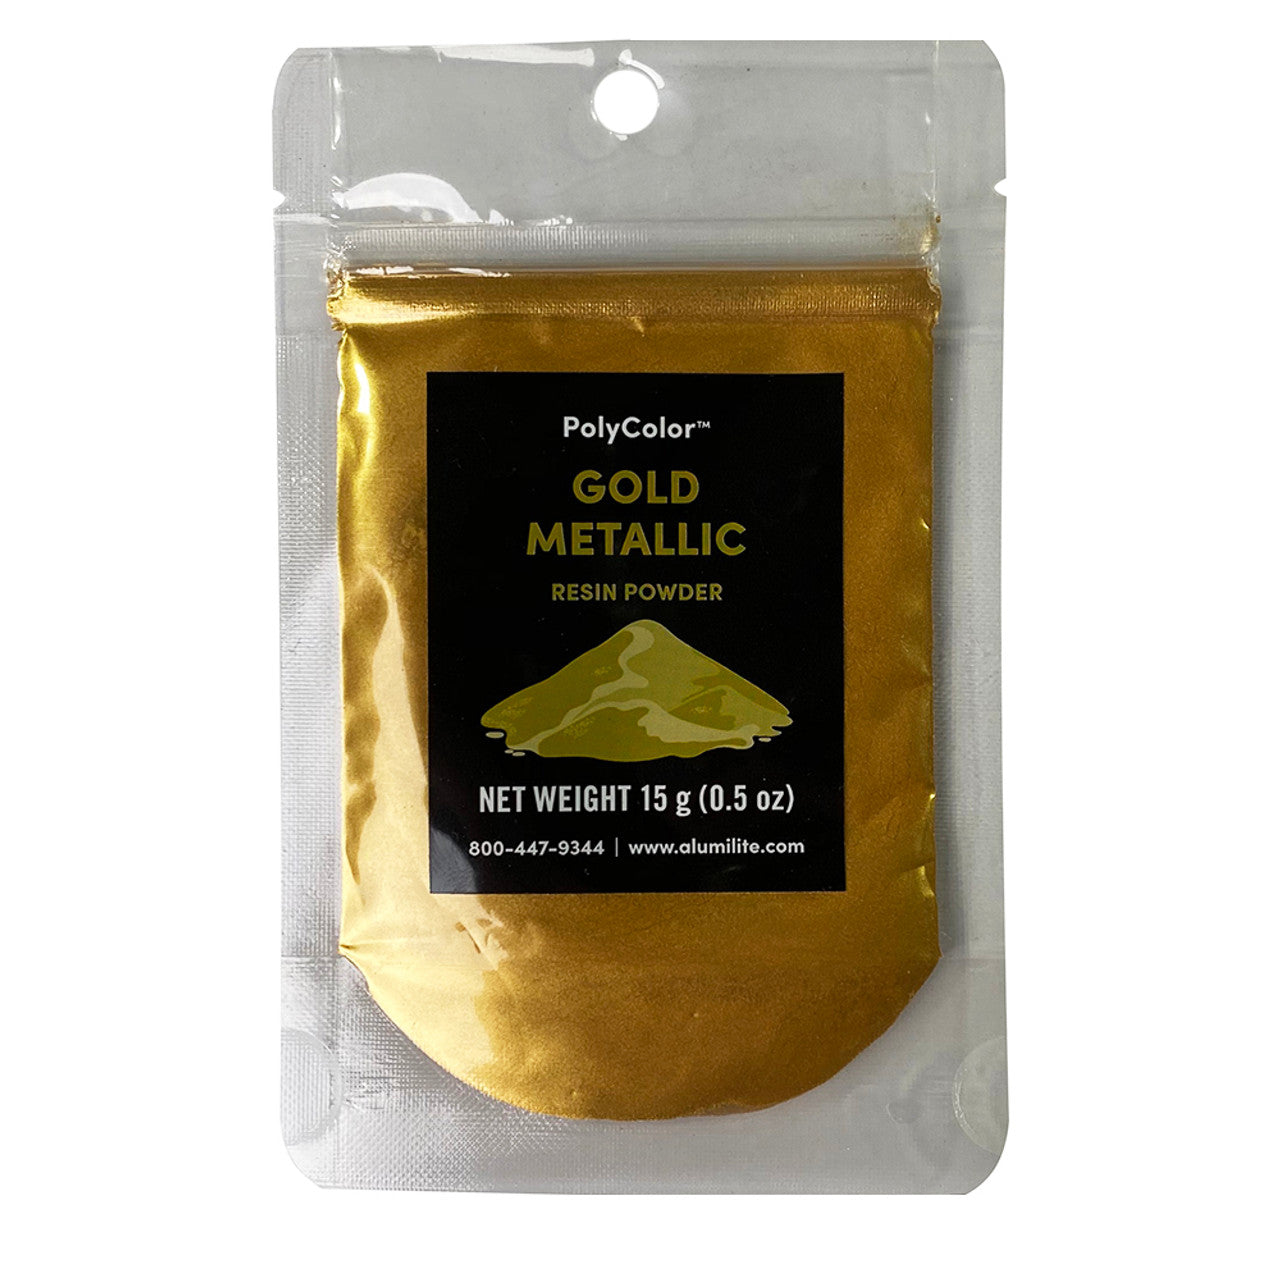 Polycolor Resin Powder Gold Metallic 15 G Bag (0.5 oz)  AL31009-15G